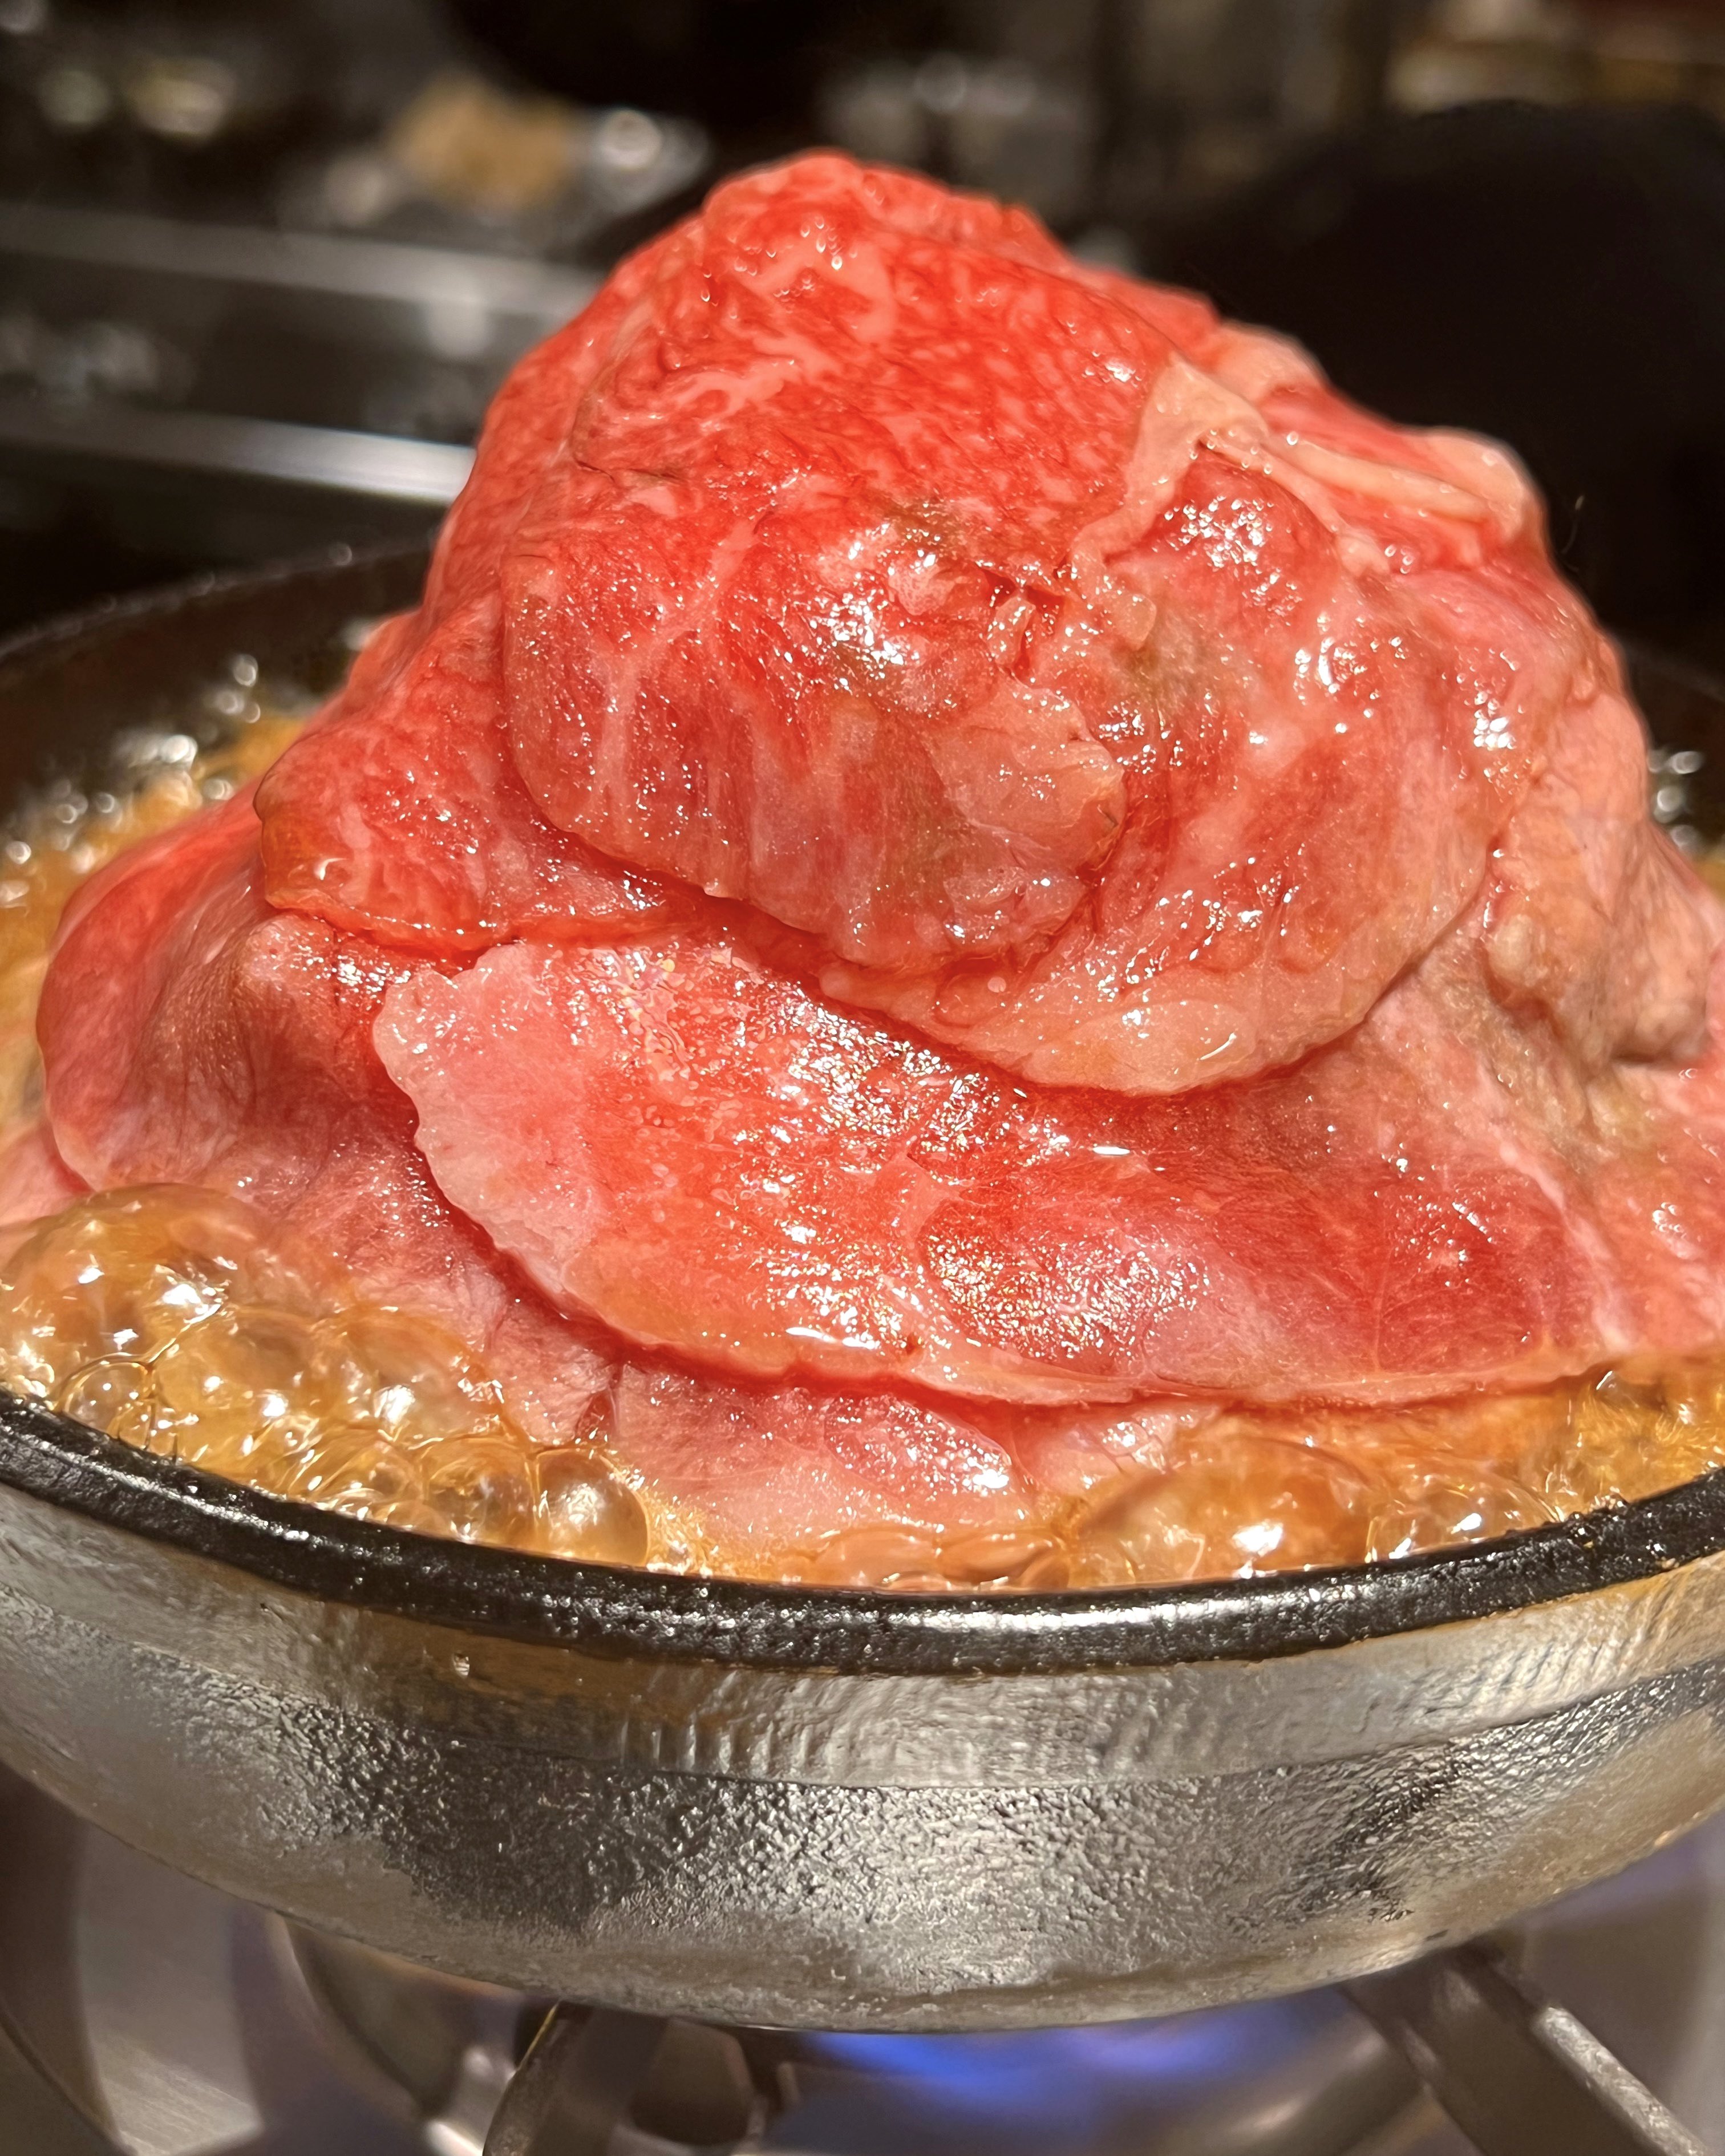 フォーリンデブはっしー 京都にある Kanegura は 高級肉割烹 三芳 が手がける カジュアル肉料理店 こんもり山盛り の 肉鍋 が1300円なのは破格で シャキシャキな細モヤシを肉でローリングしつつ 生卵にダンクすればすき焼き風に 近江牛